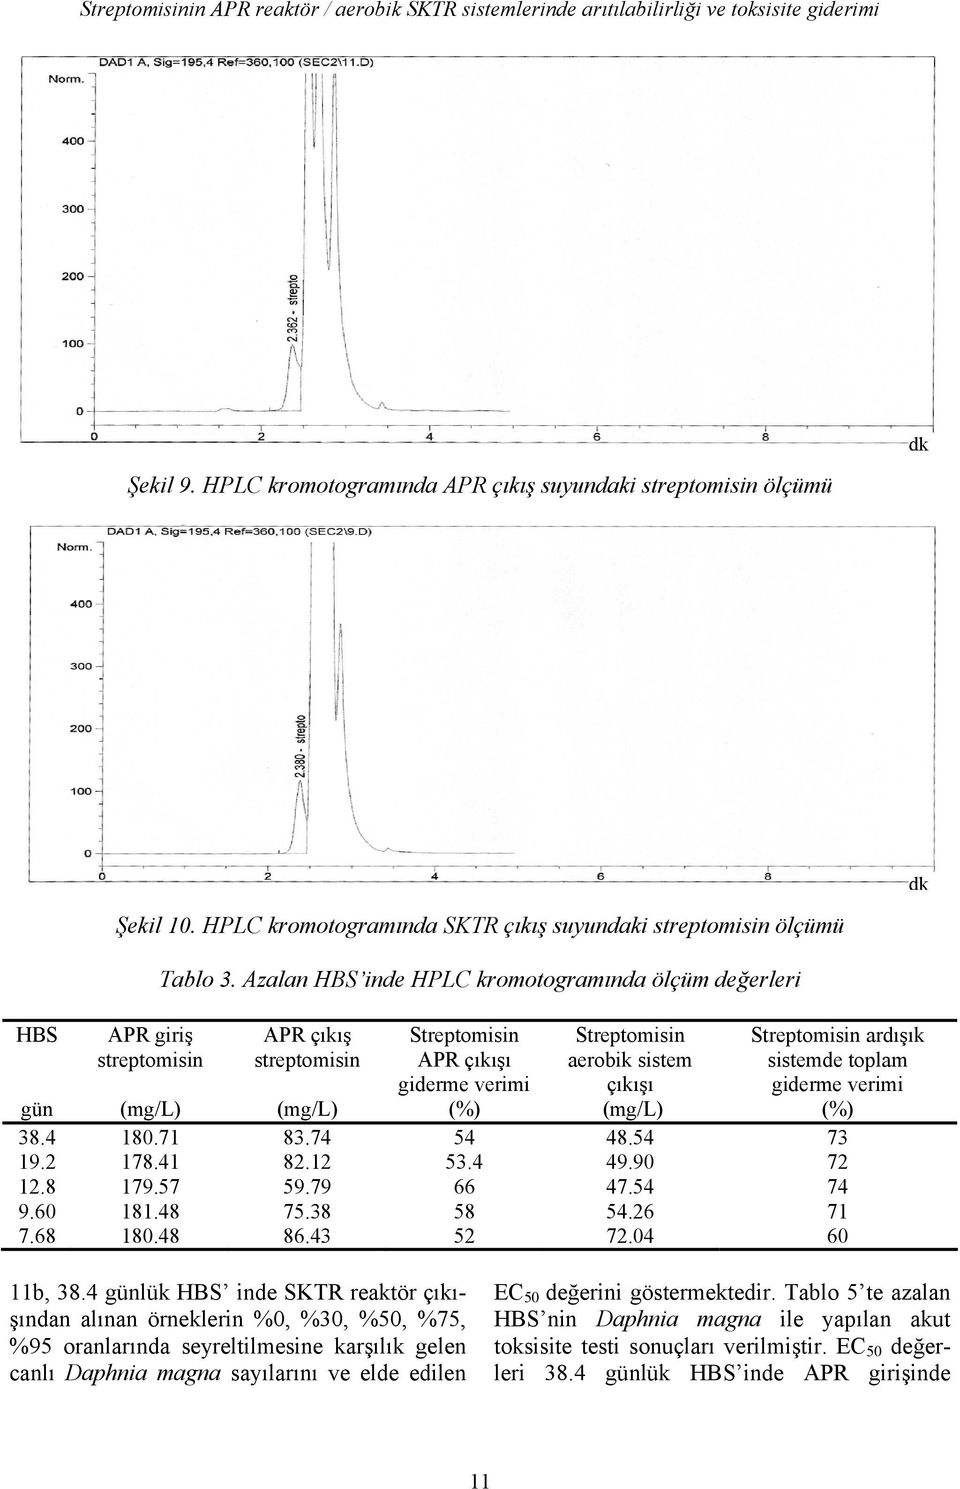 Azalan HBS inde HPLC kromotogramında ölçüm değerleri APR çıkış streptomisin Streptomisin APR çıkışı giderme verimi (%) Streptomisin aerobik sistem çıkışı (mg/l) Streptomisin ardışık sistemde toplam